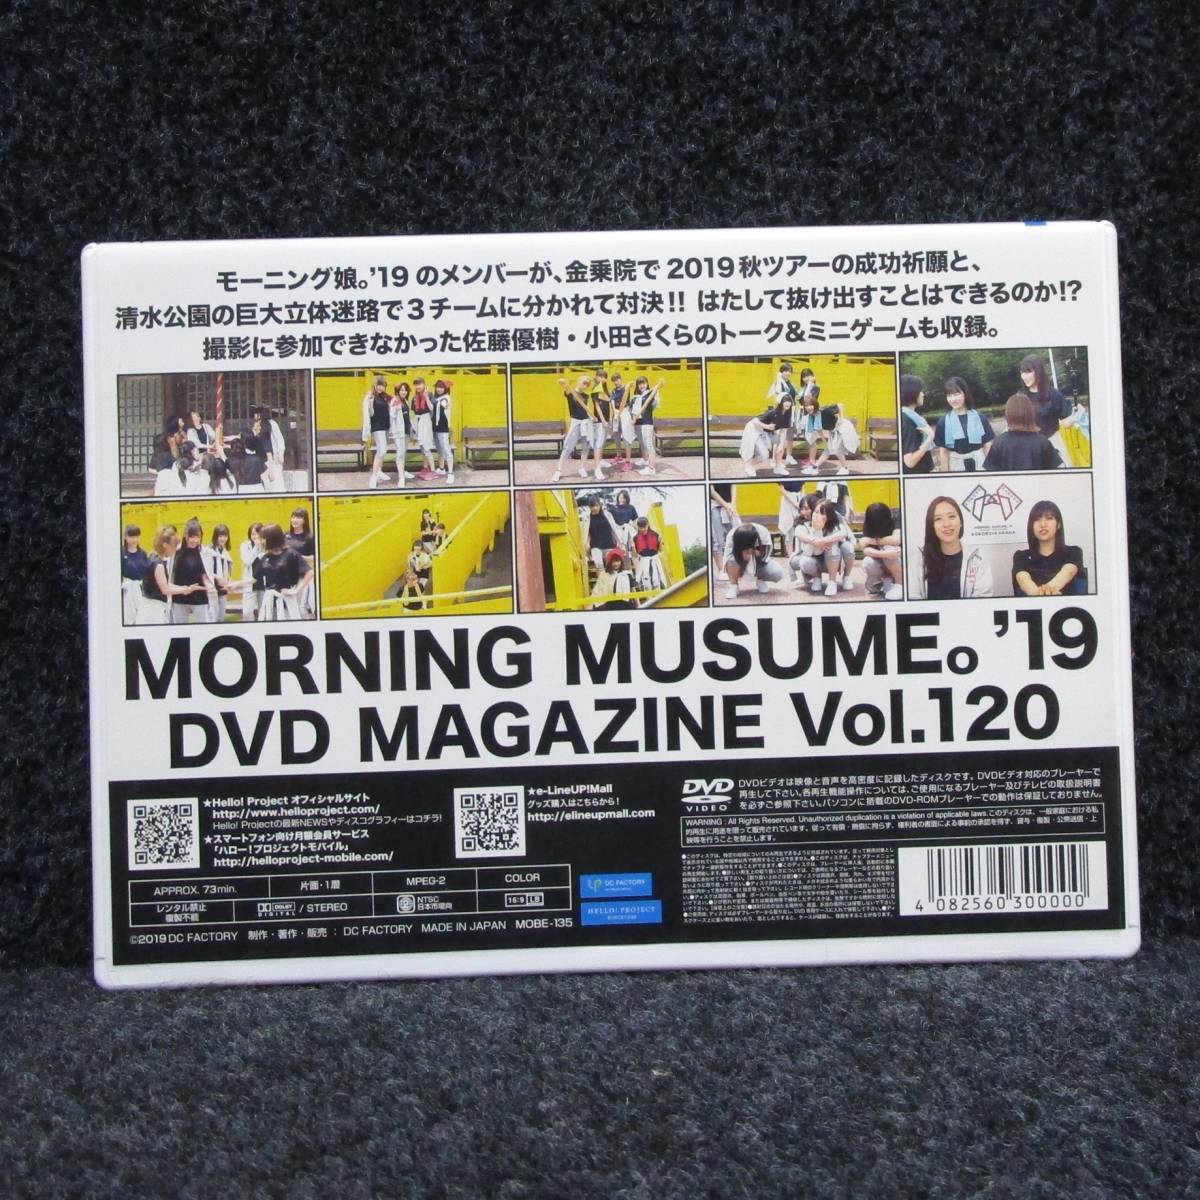 [DVD] モーニング娘。 DVD MAGAZINE VOL.120 DVDマガジン_画像2